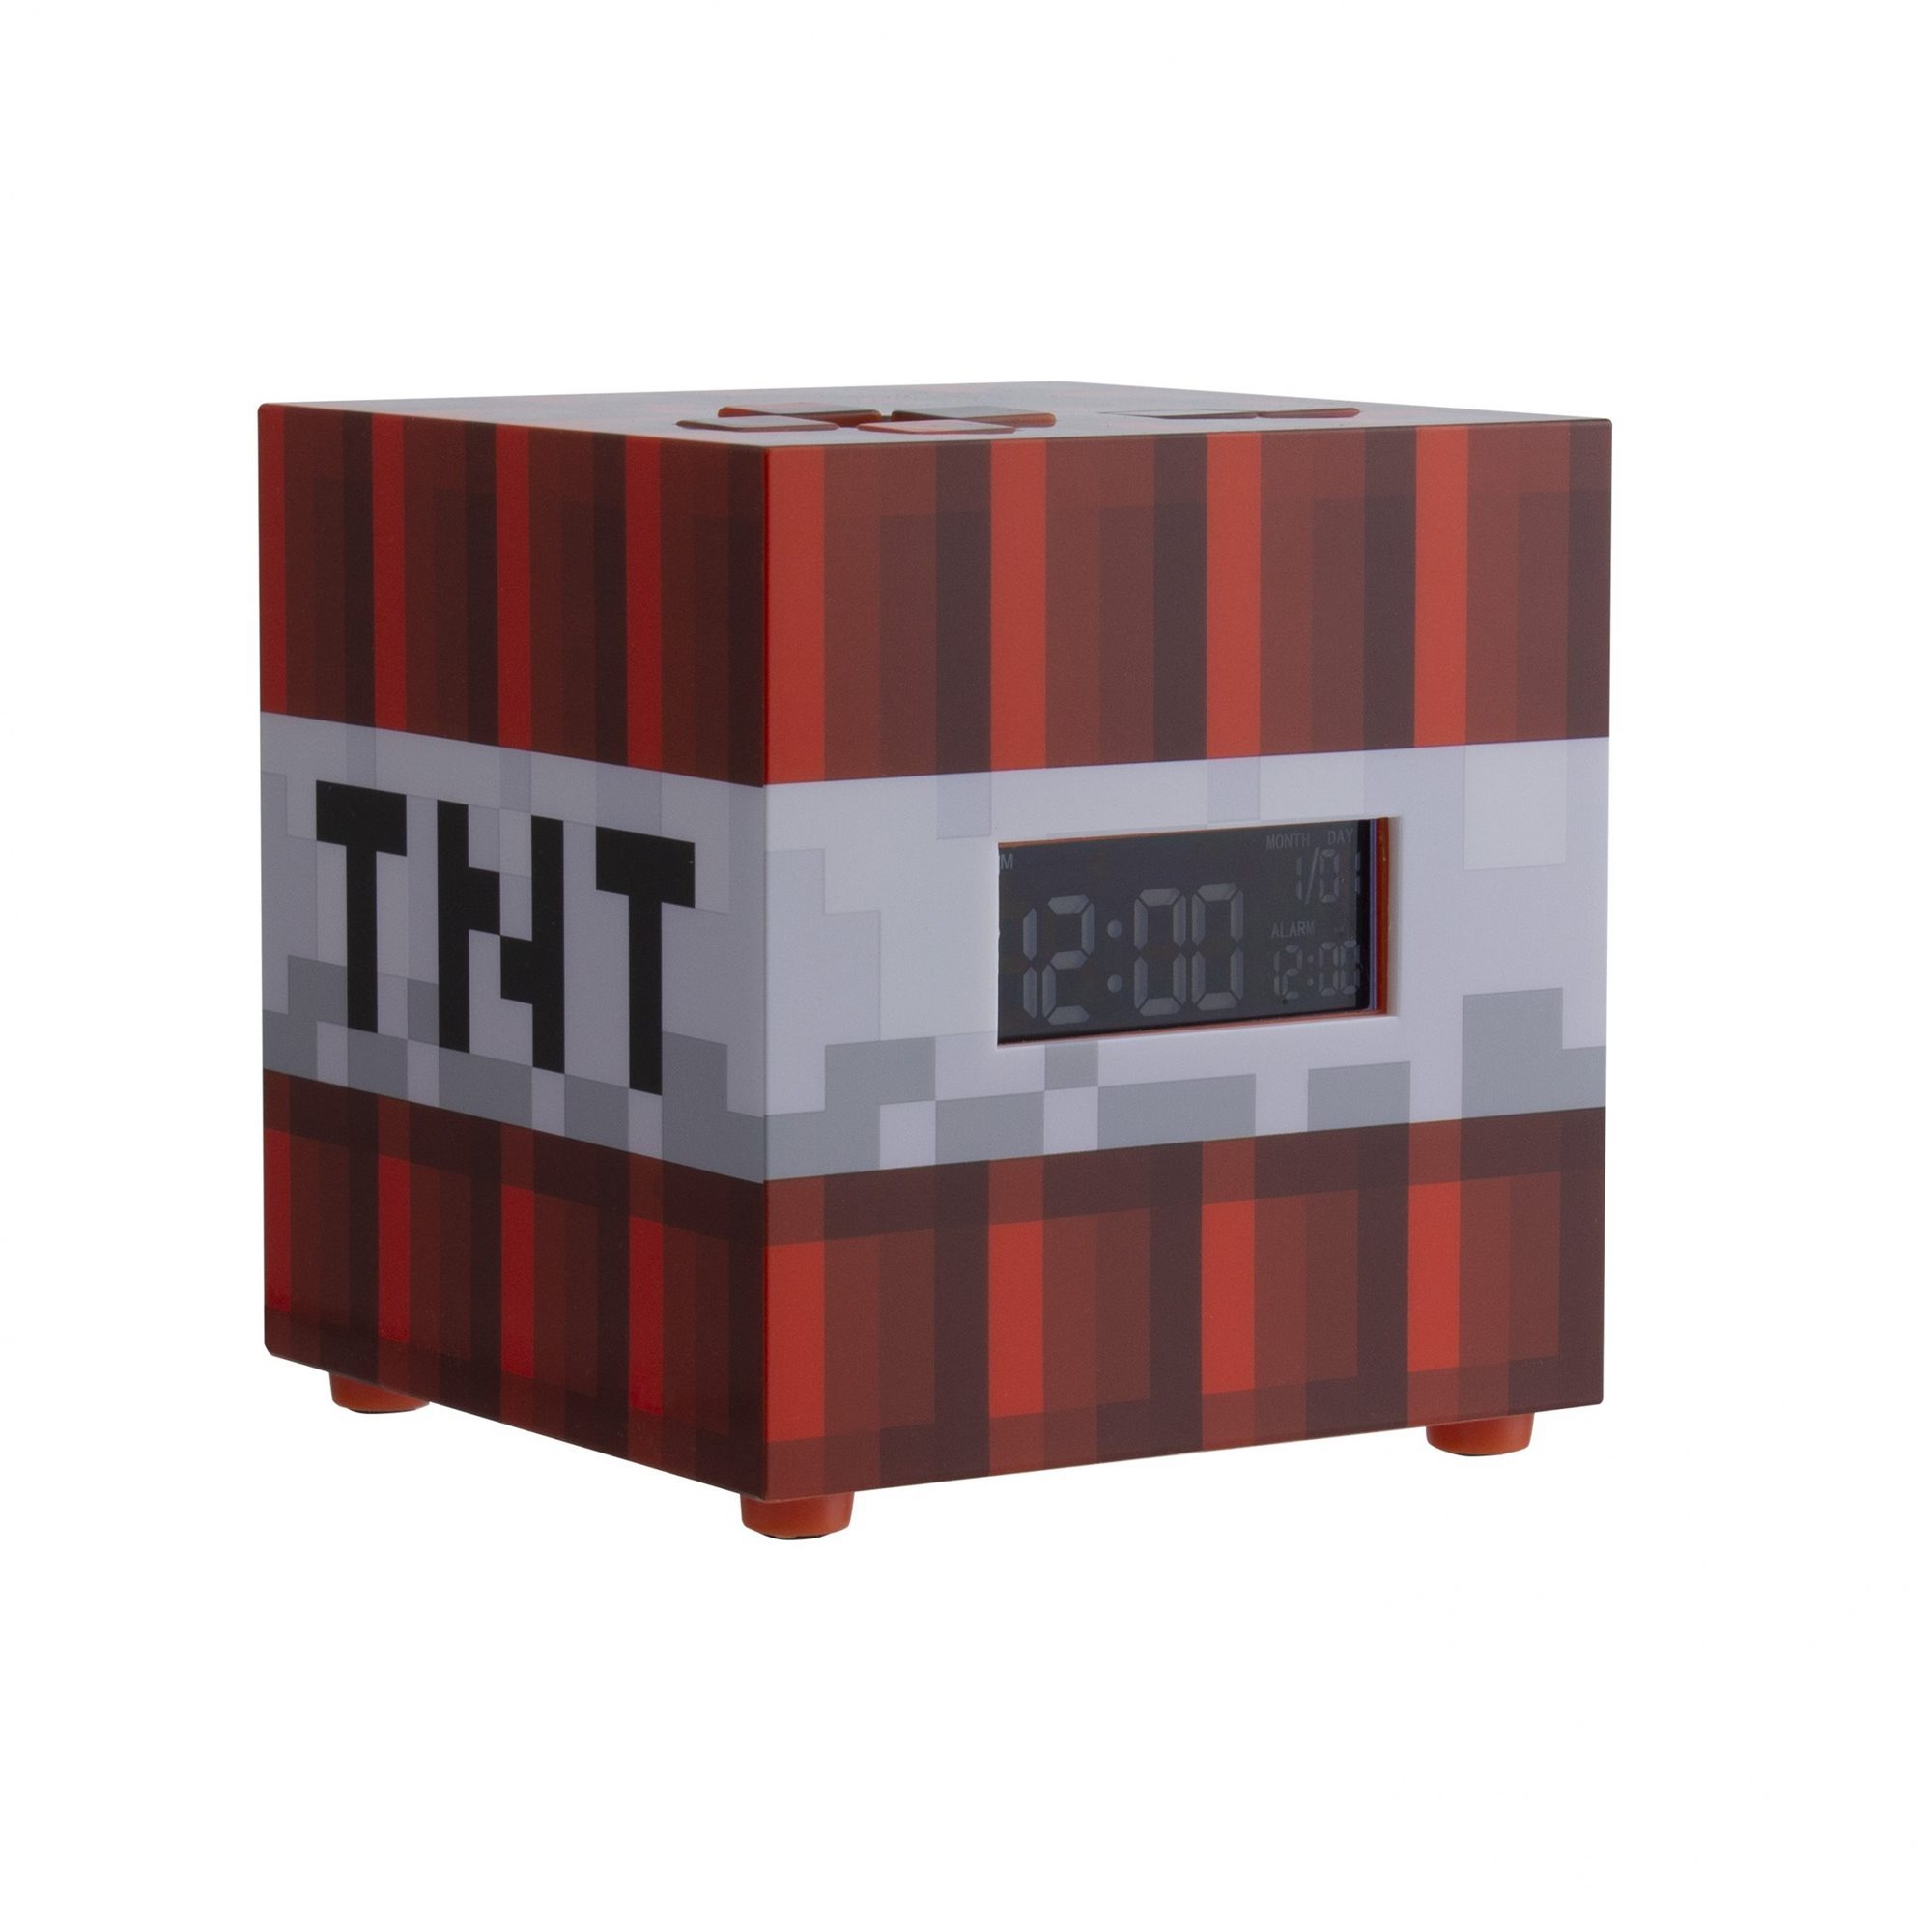 Ébresztőóra Minecraft - TNT - ébresztőóra